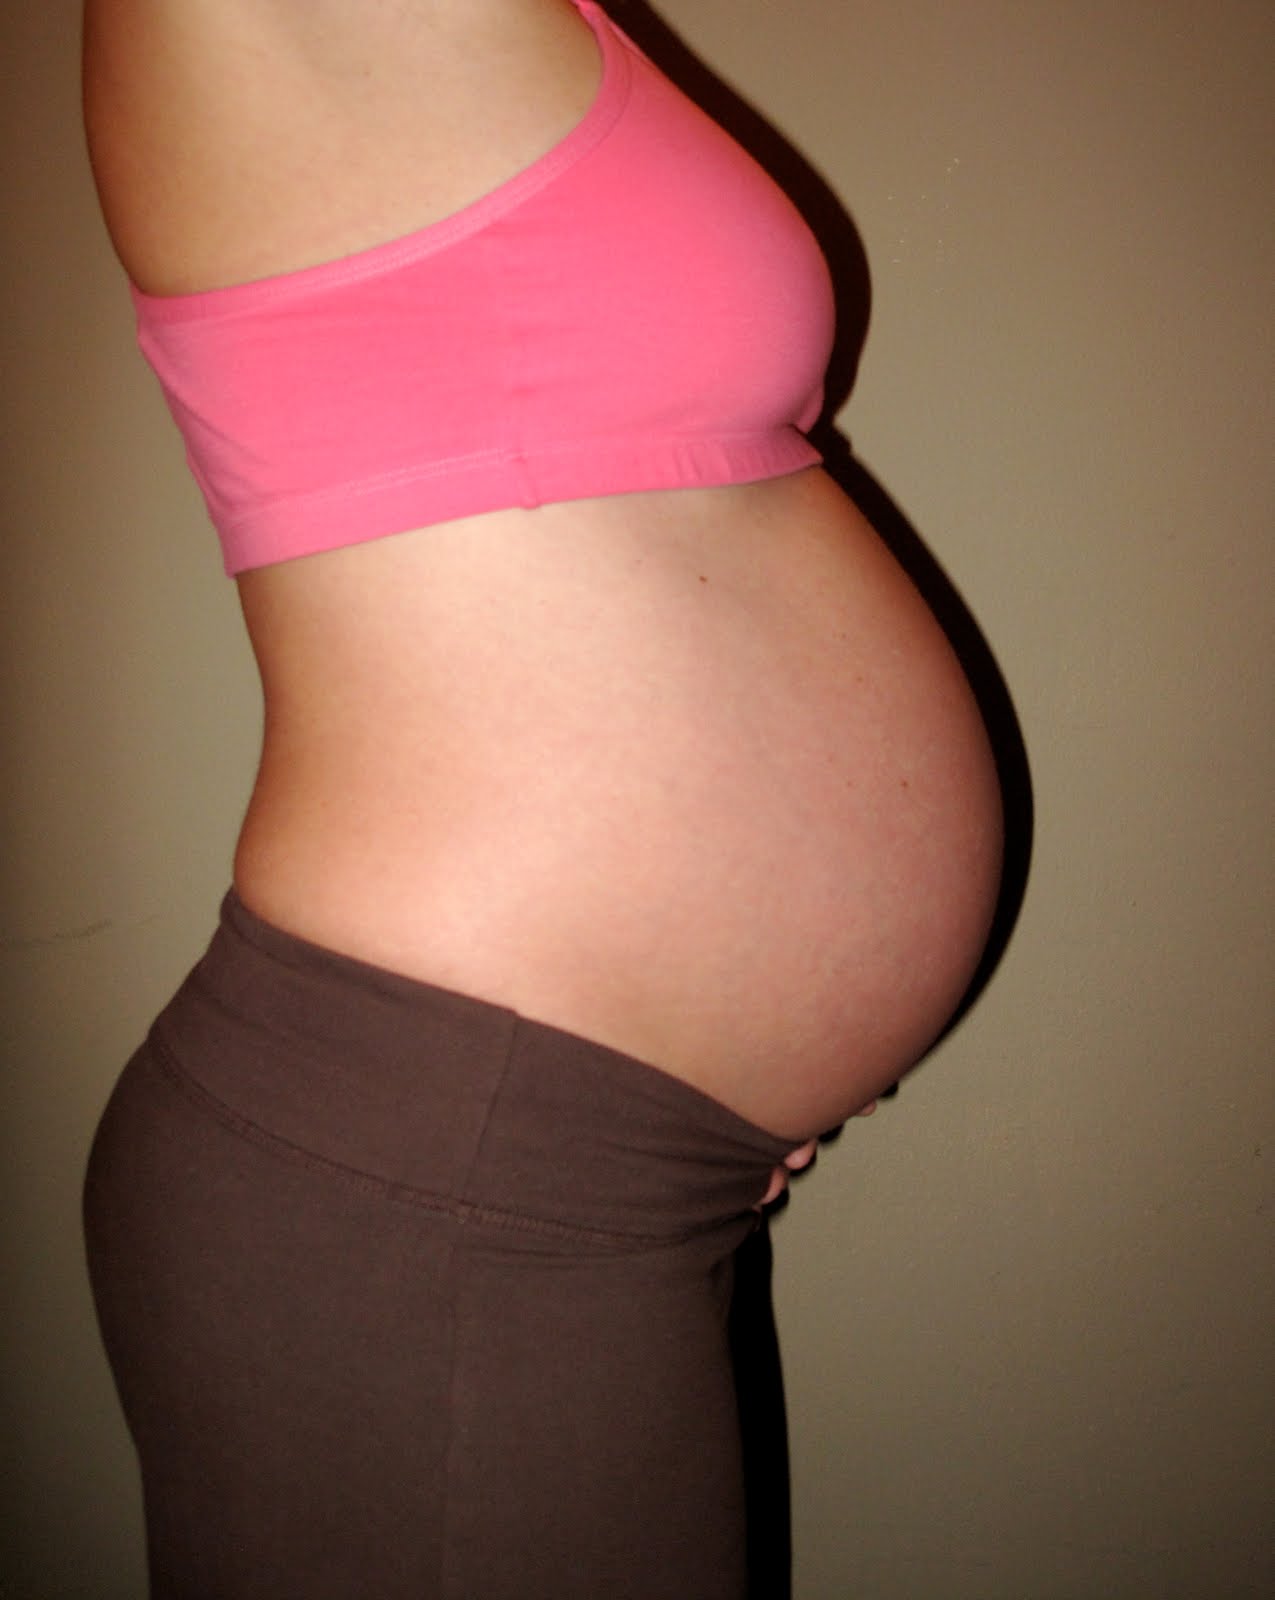 Живот на 6 месяце беременности